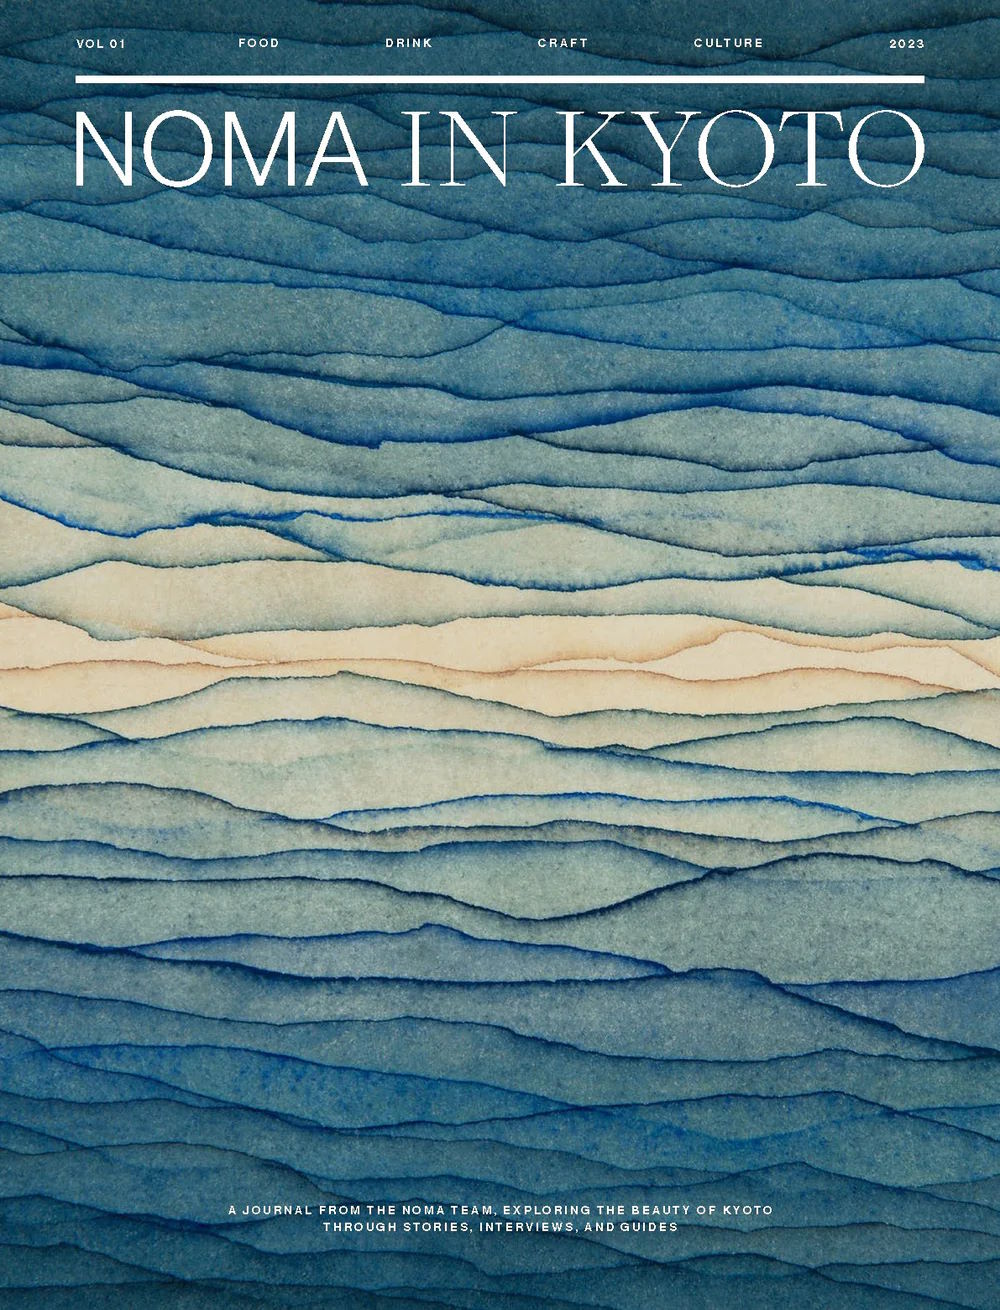 Buy Noma 2.0 by Rene Redzepi – Kitchen Arts & Letters